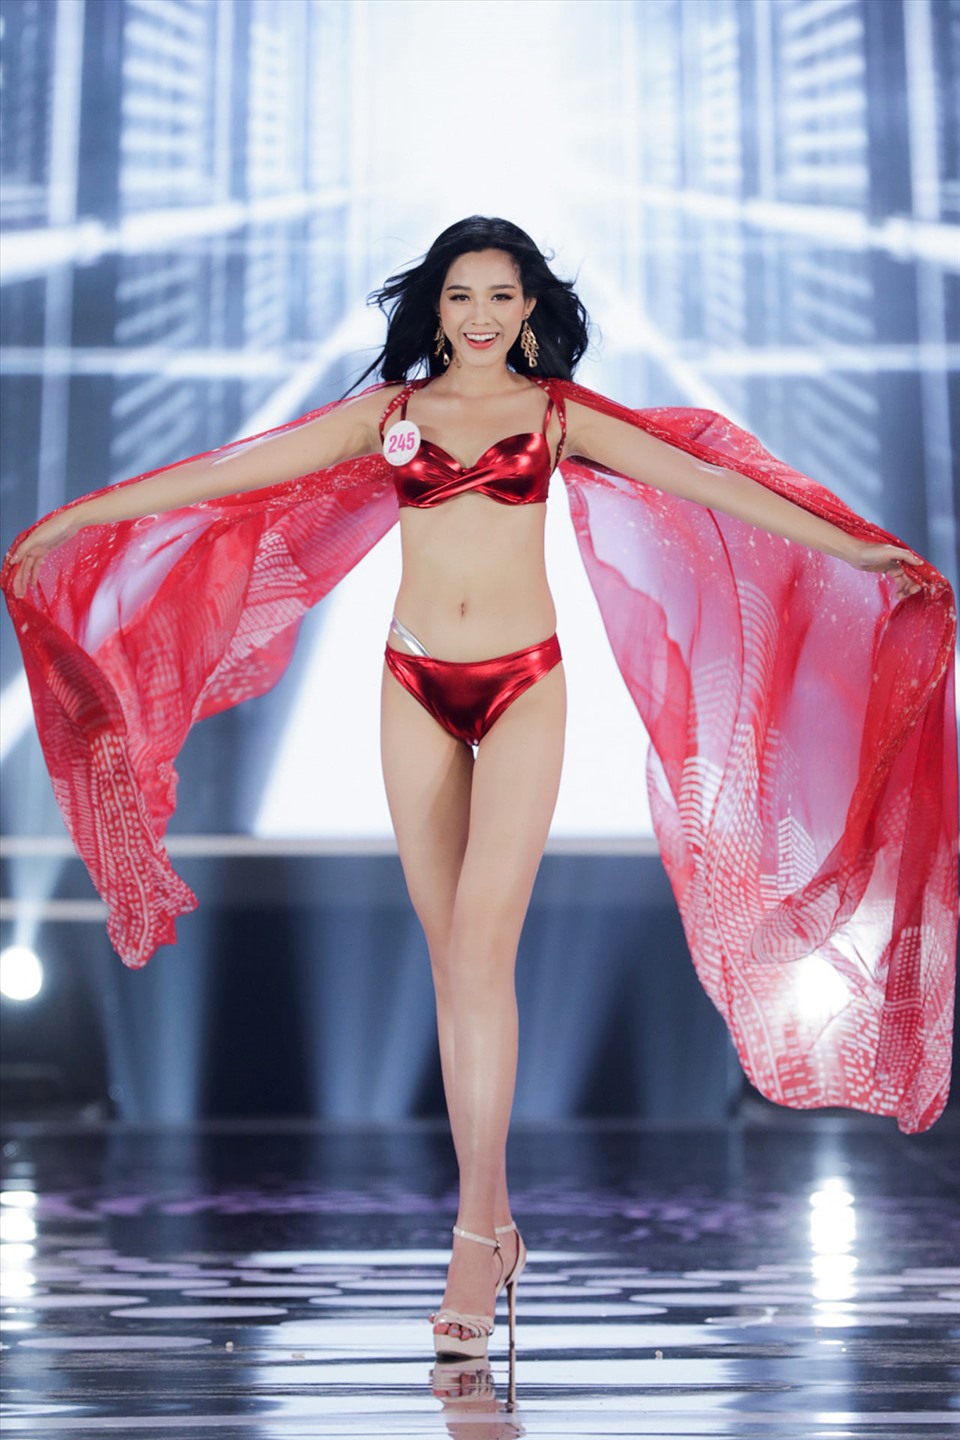 Người đẹp sinh năm 2001 có những phần thể hiện xuất sắc trong đêm chung kết Hoa hậu Việt Nam 2020. Ảnh: HHVN.